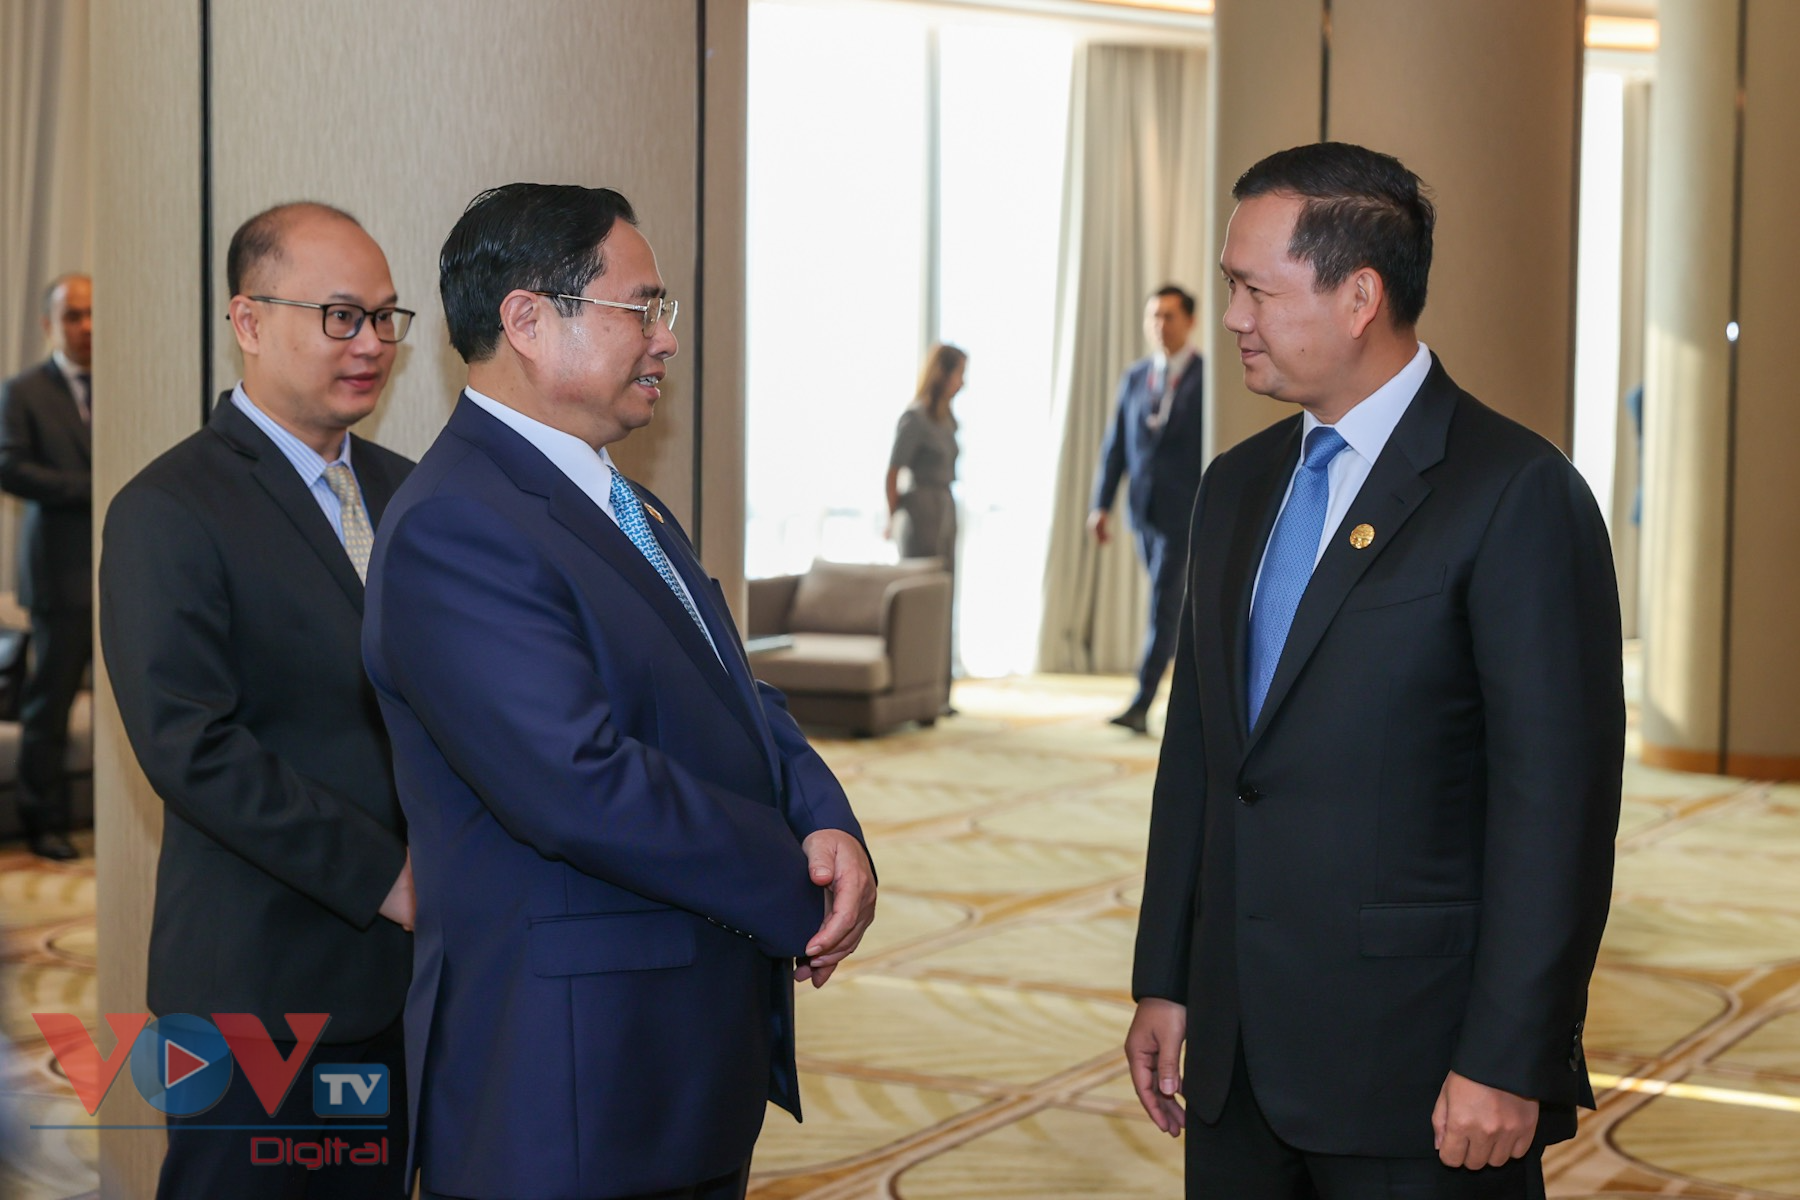 Thủ tướng Phạm Minh Chính ăn sáng làm việc với Thủ tướng Lào và Thủ tướng Campuchia - Ảnh 1.